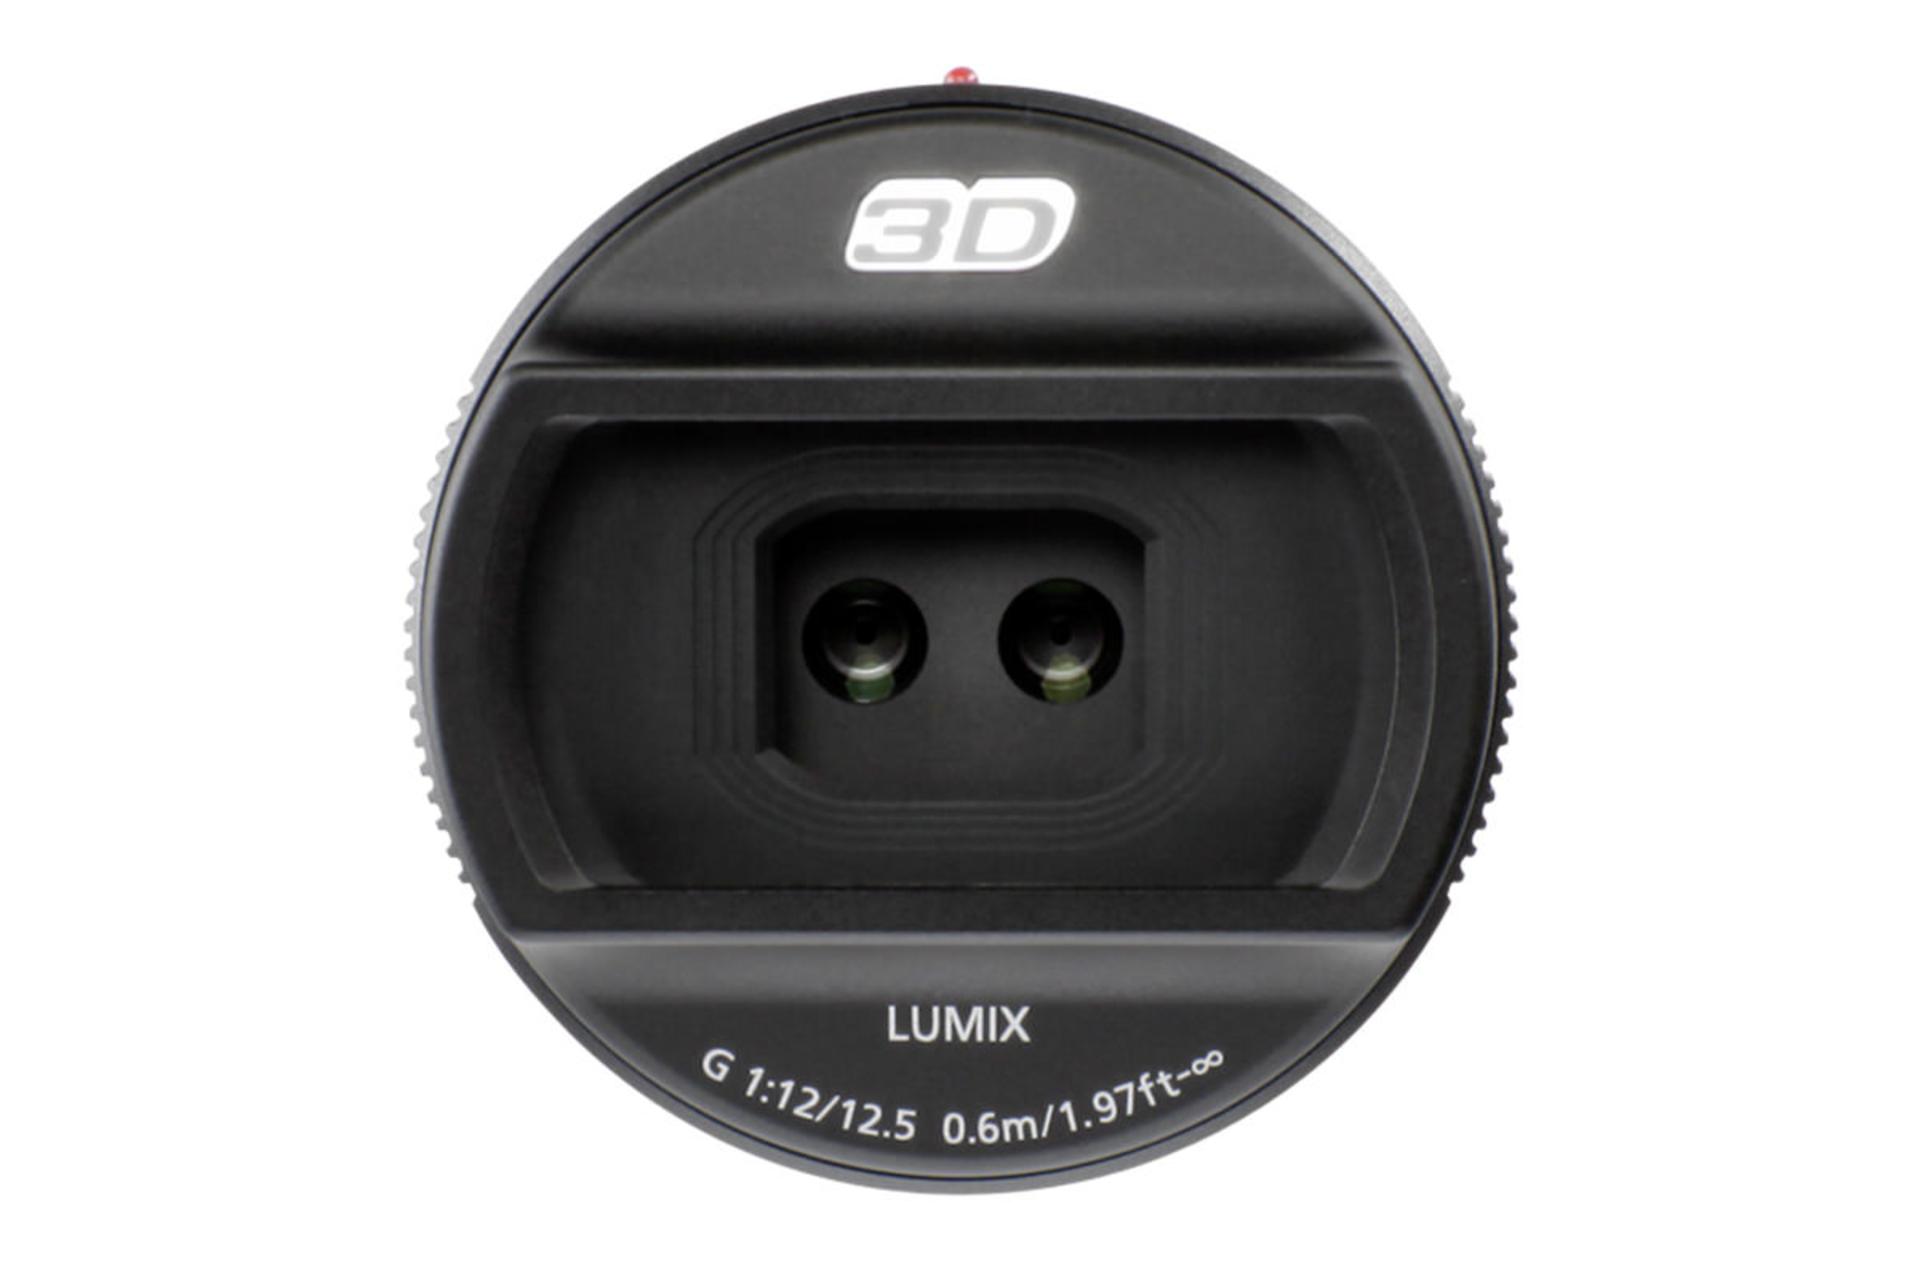  لنز پاناسونیک Lumix G 12.5mm / F12 نمای روبرو